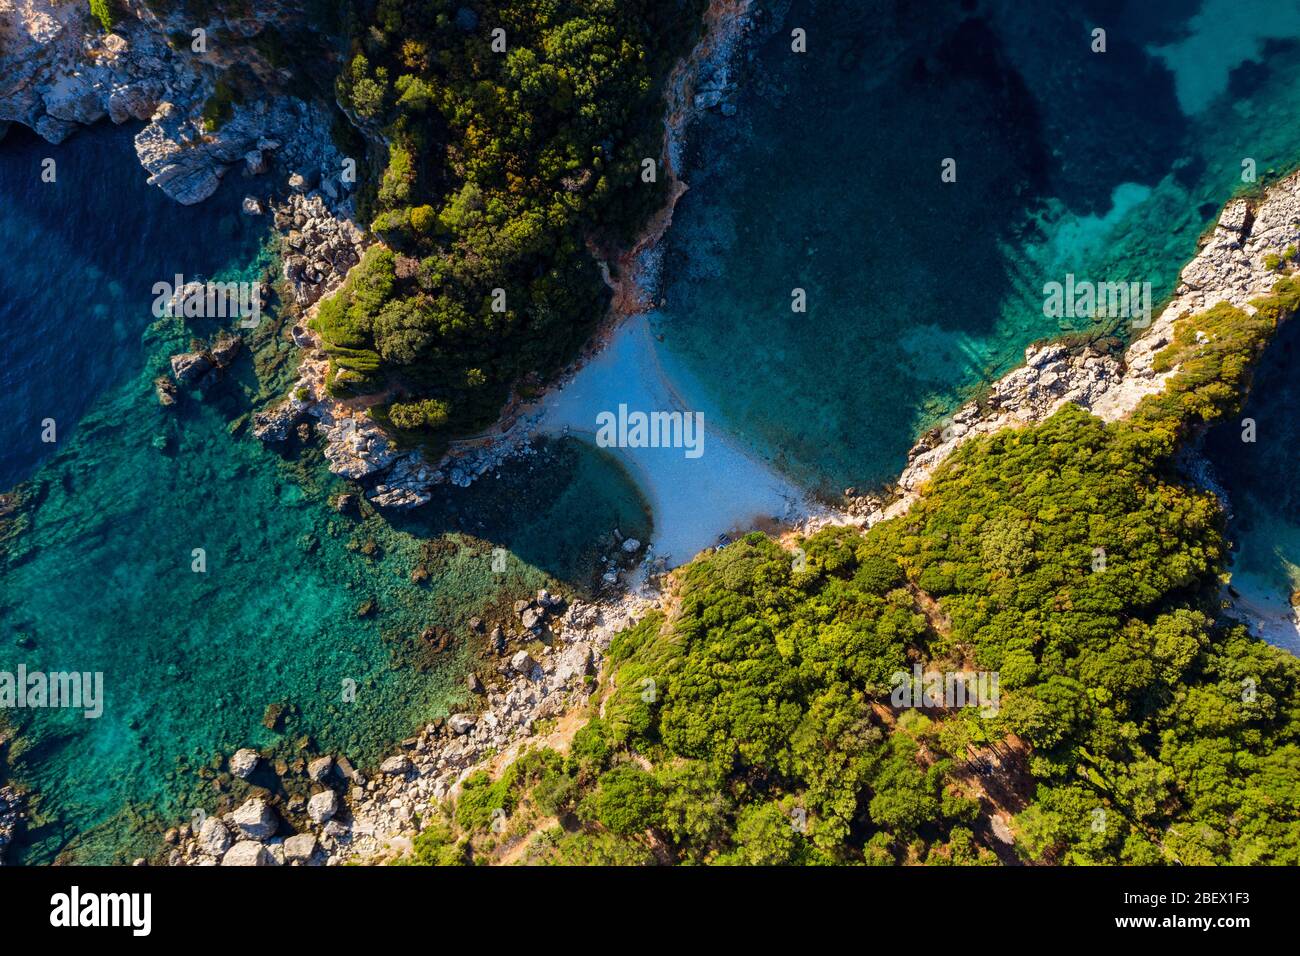 Luftaufnahme des abgeschiedenen Strandes in Griechenland. Eine versteckte Bucht im mittelmeer. Limni Strand auf Korfu Insel. Stockfoto